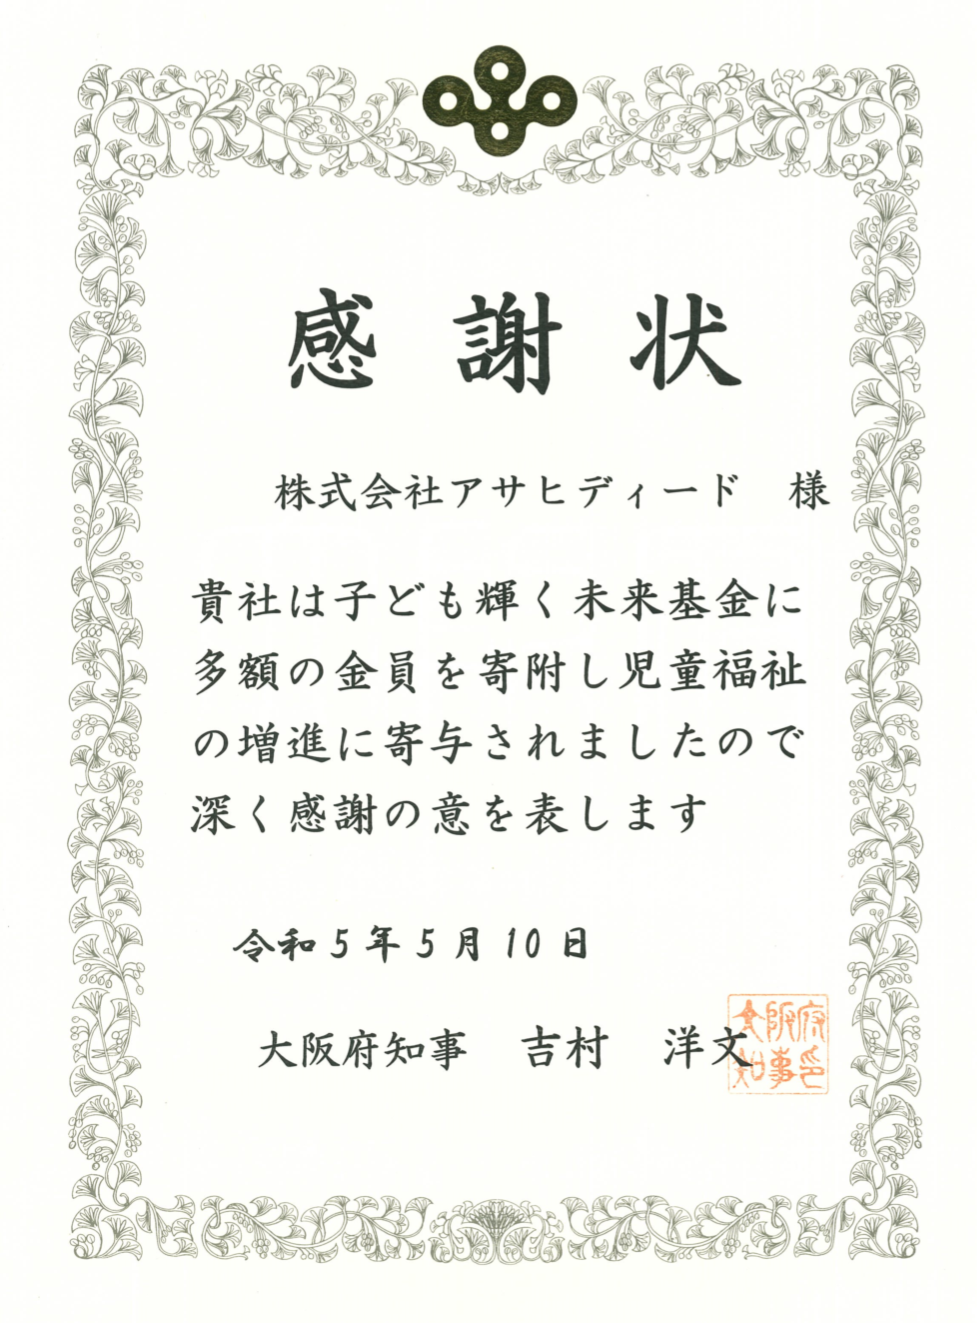 大阪府知事より感謝状が届きました